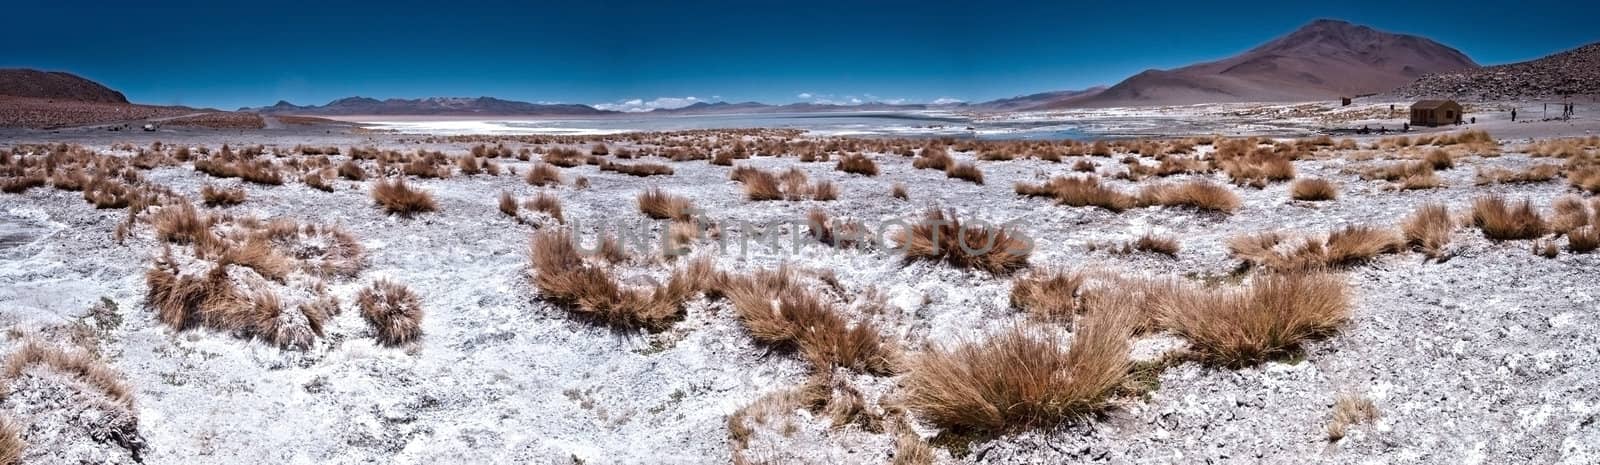 Panoramic view of the Bolivian Desert